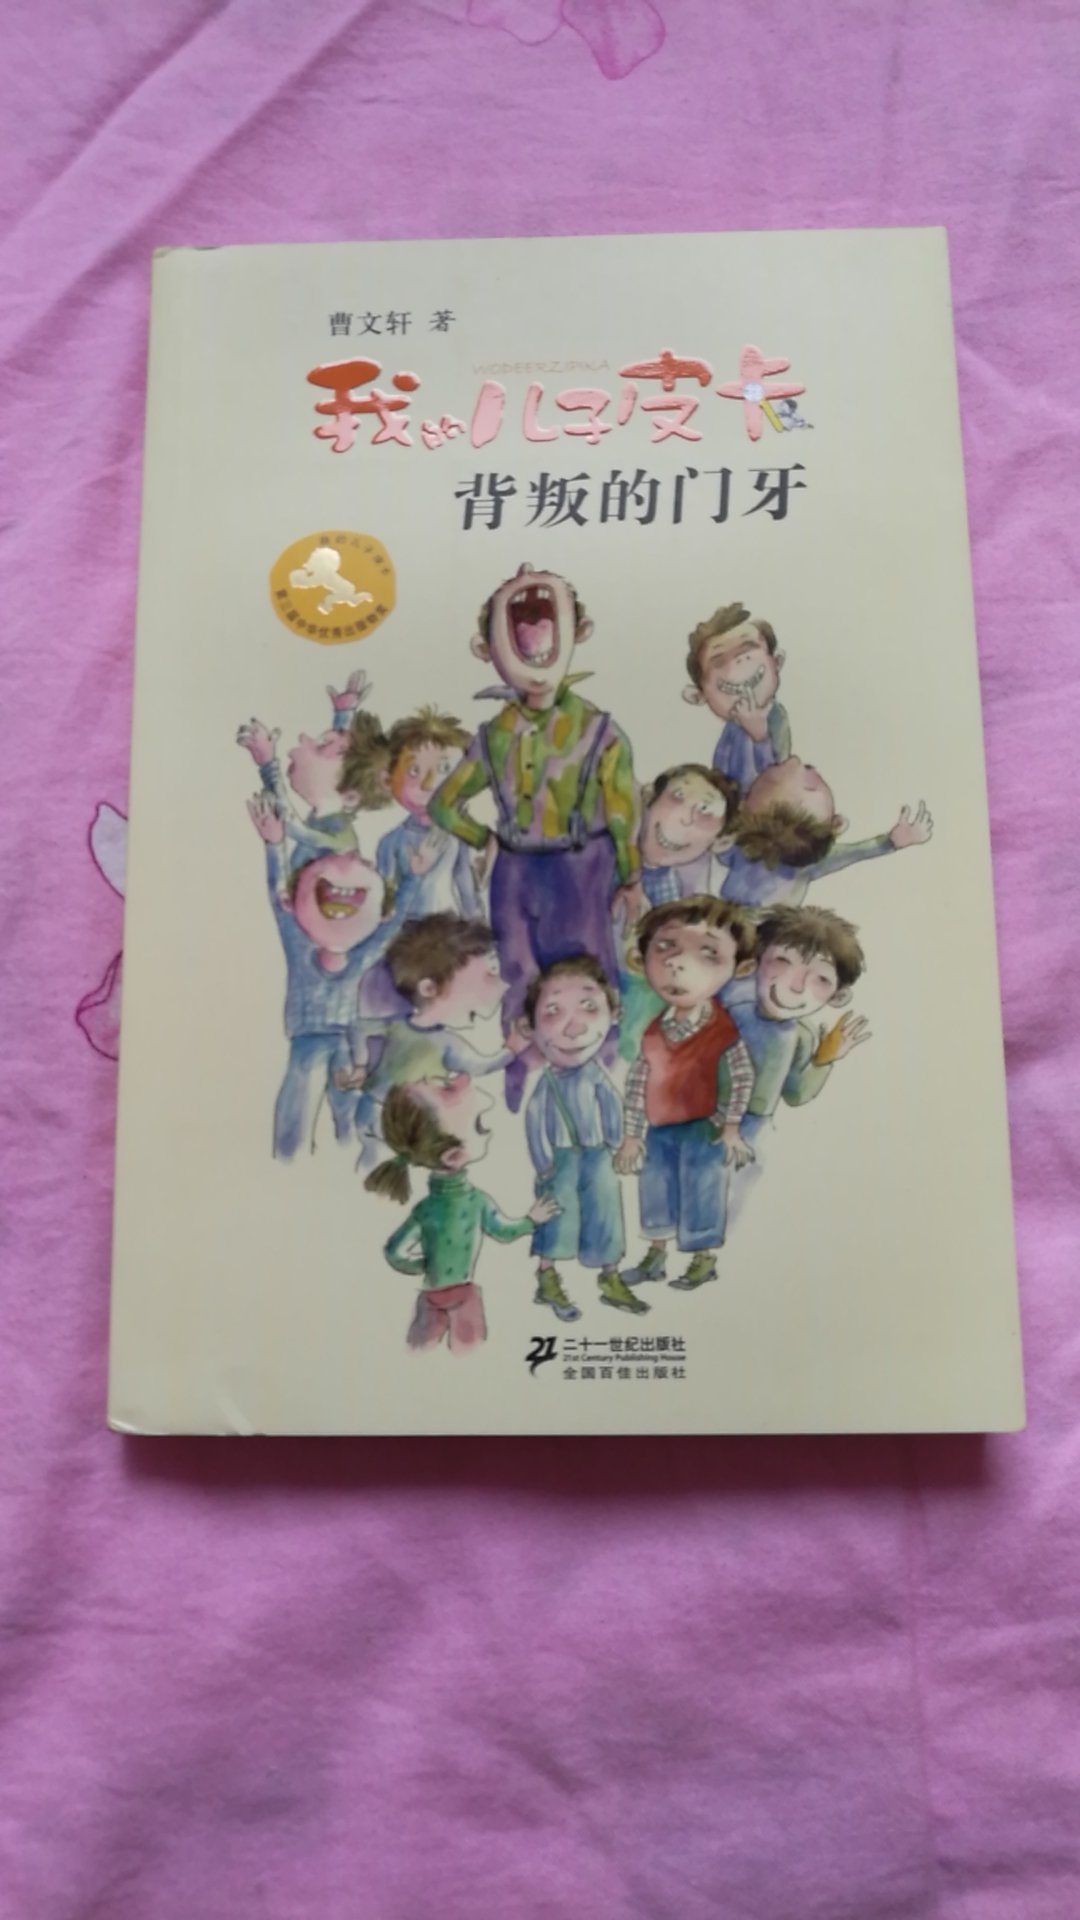 曹文轩的书听说过，但还没有读过，应该不错吧。纯字数书，准备读给六岁的孩子听。